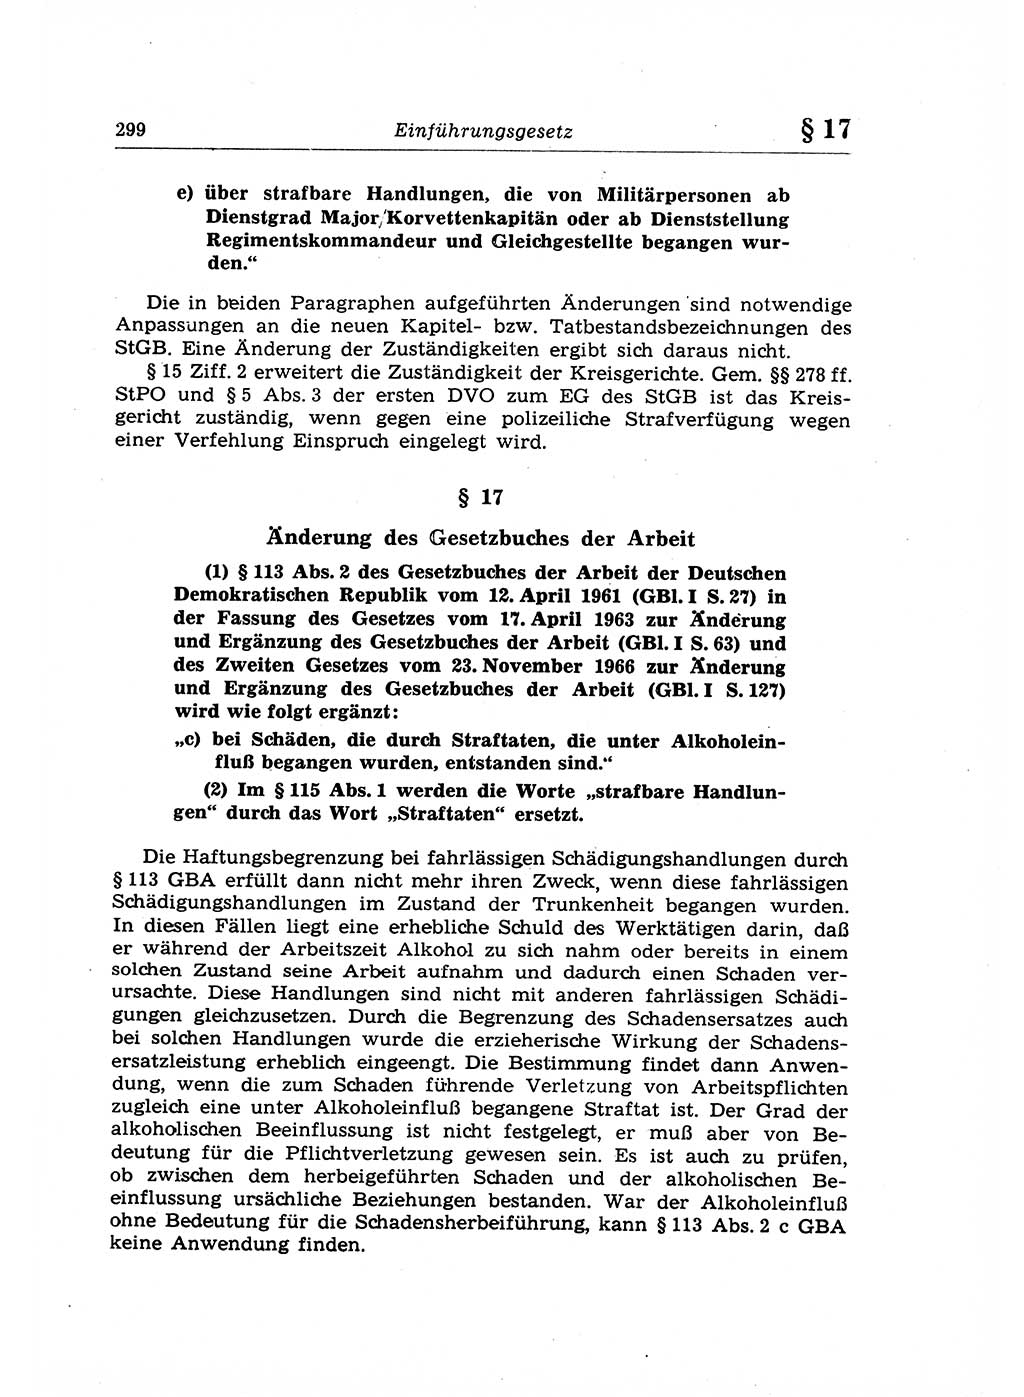 Strafrecht der Deutschen Demokratischen Republik (DDR), Lehrkommentar zum Strafgesetzbuch (StGB), Allgemeiner Teil 1969, Seite 299 (Strafr. DDR Lehrkomm. StGB AT 1969, S. 299)